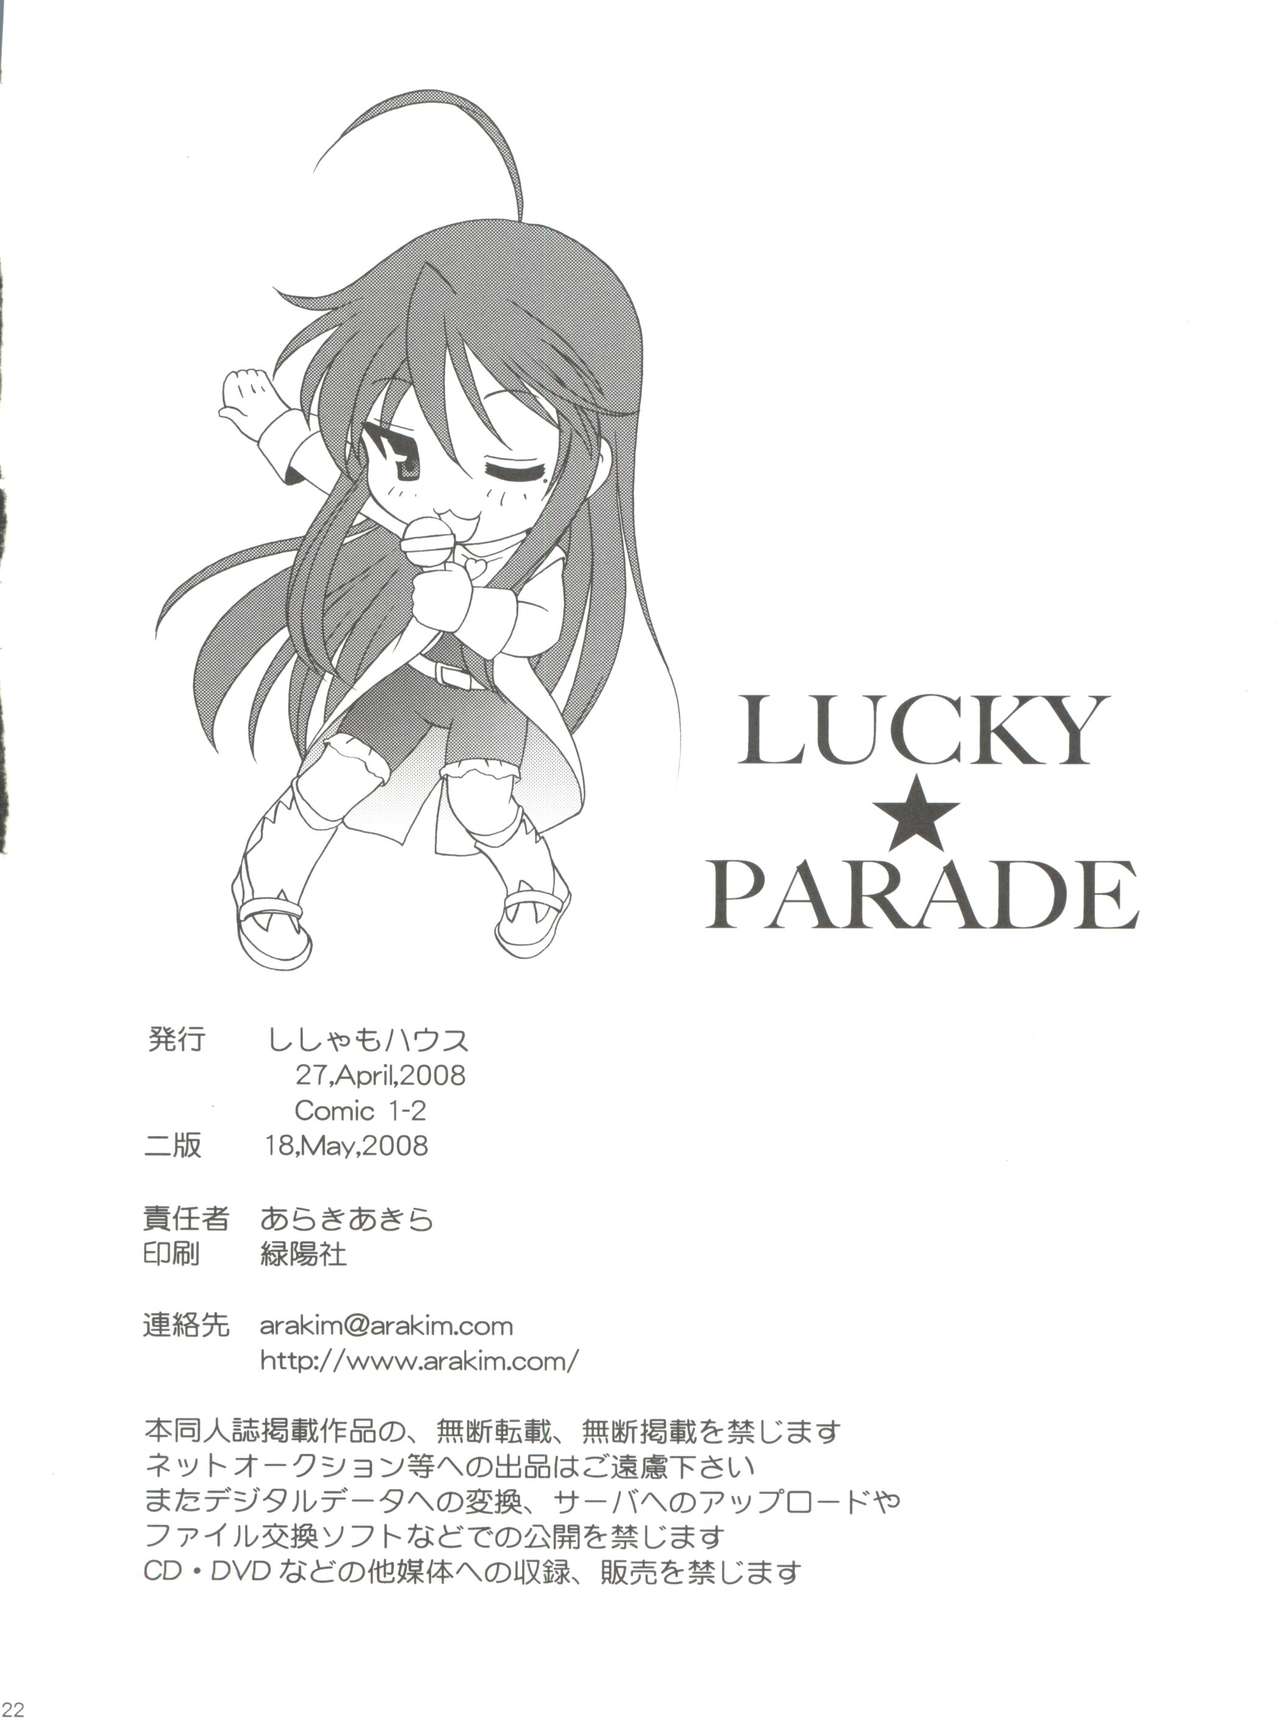 (COMIC1☆2) [ししゃもハウス (あらきあきら)] LUCKY PARADE (らき☆すた)